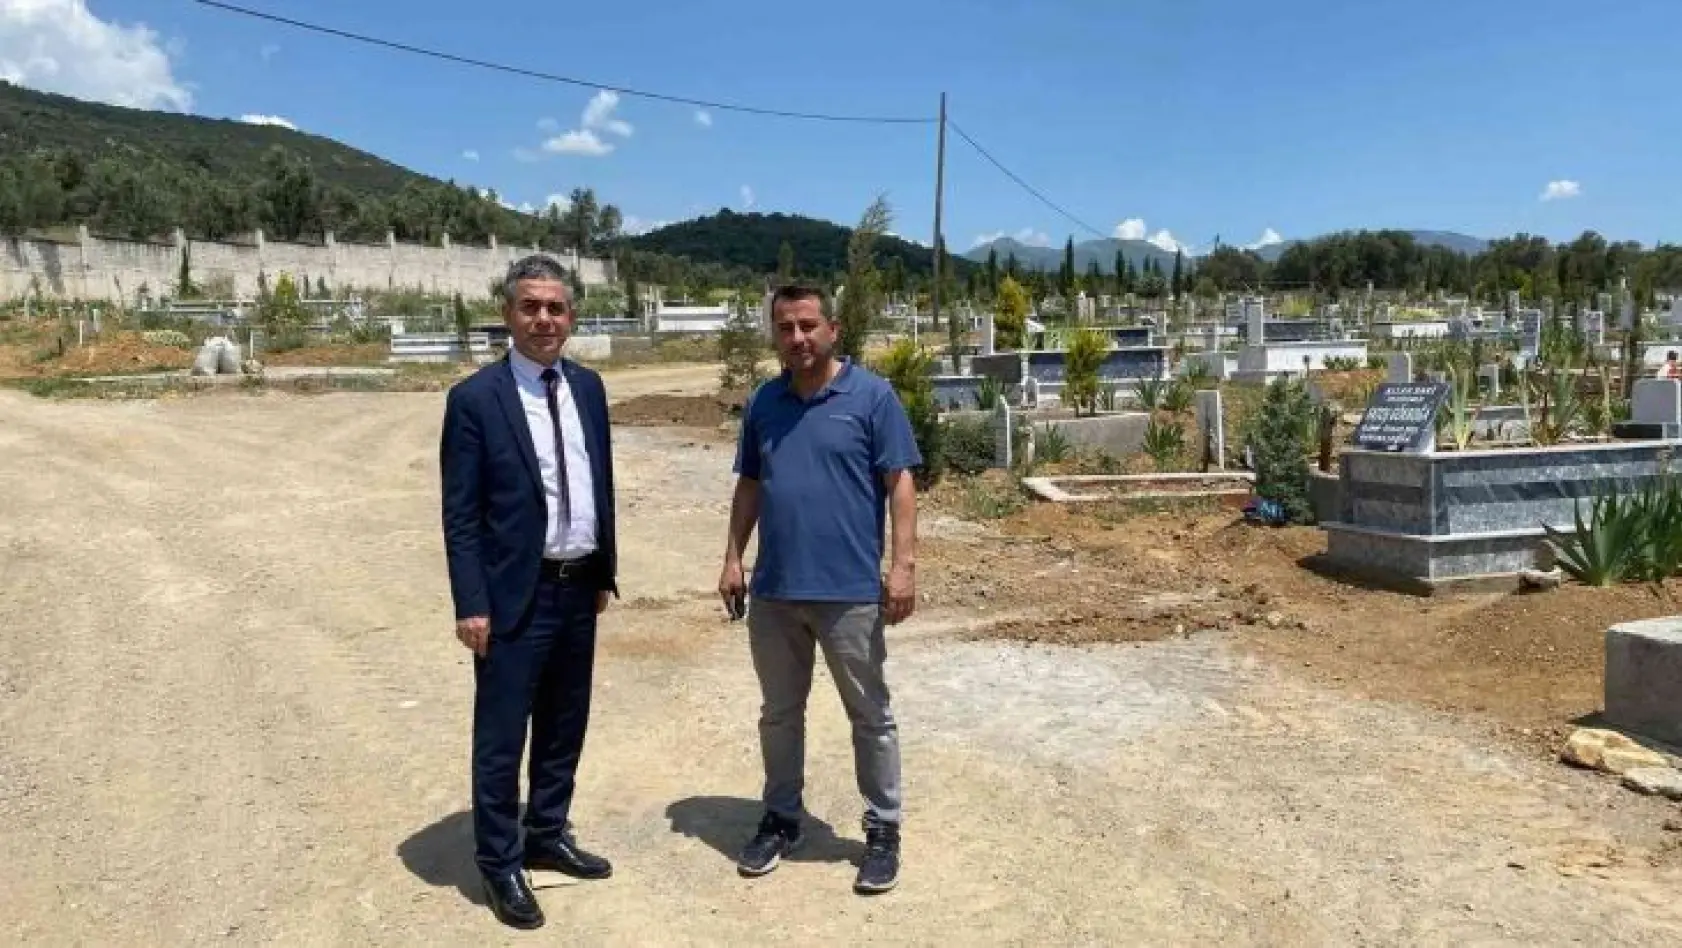 Balıkesir büyükşehir belediyesi, Edremit'in tarihine sahip çıkıyor